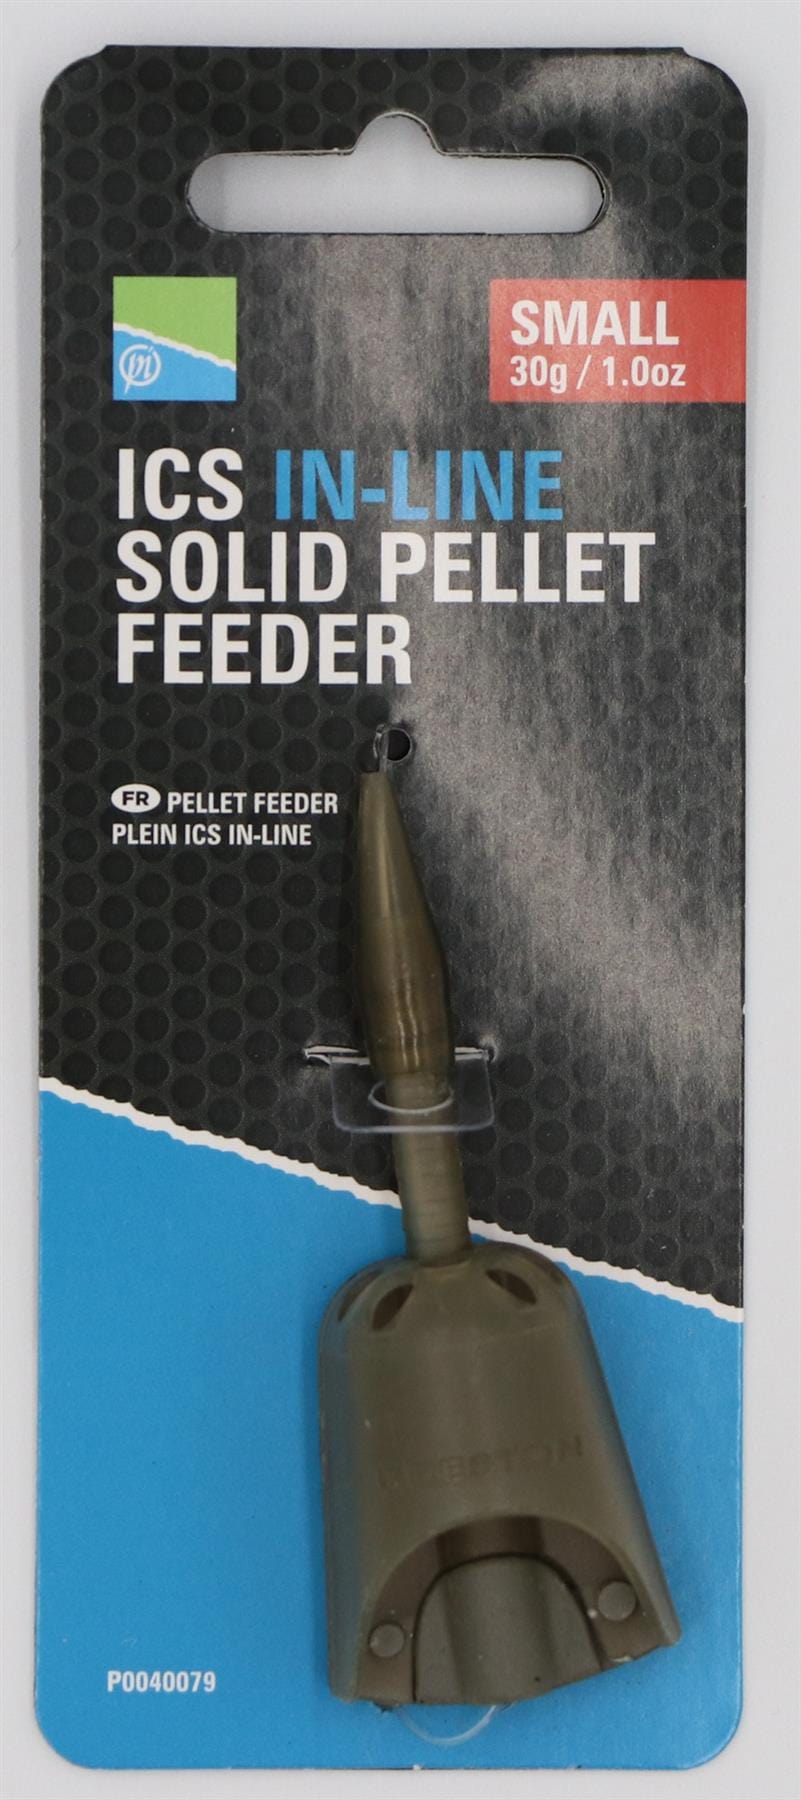 Preston Innovations ICS In-Line Solid Pellet Feeder - Small 30g.